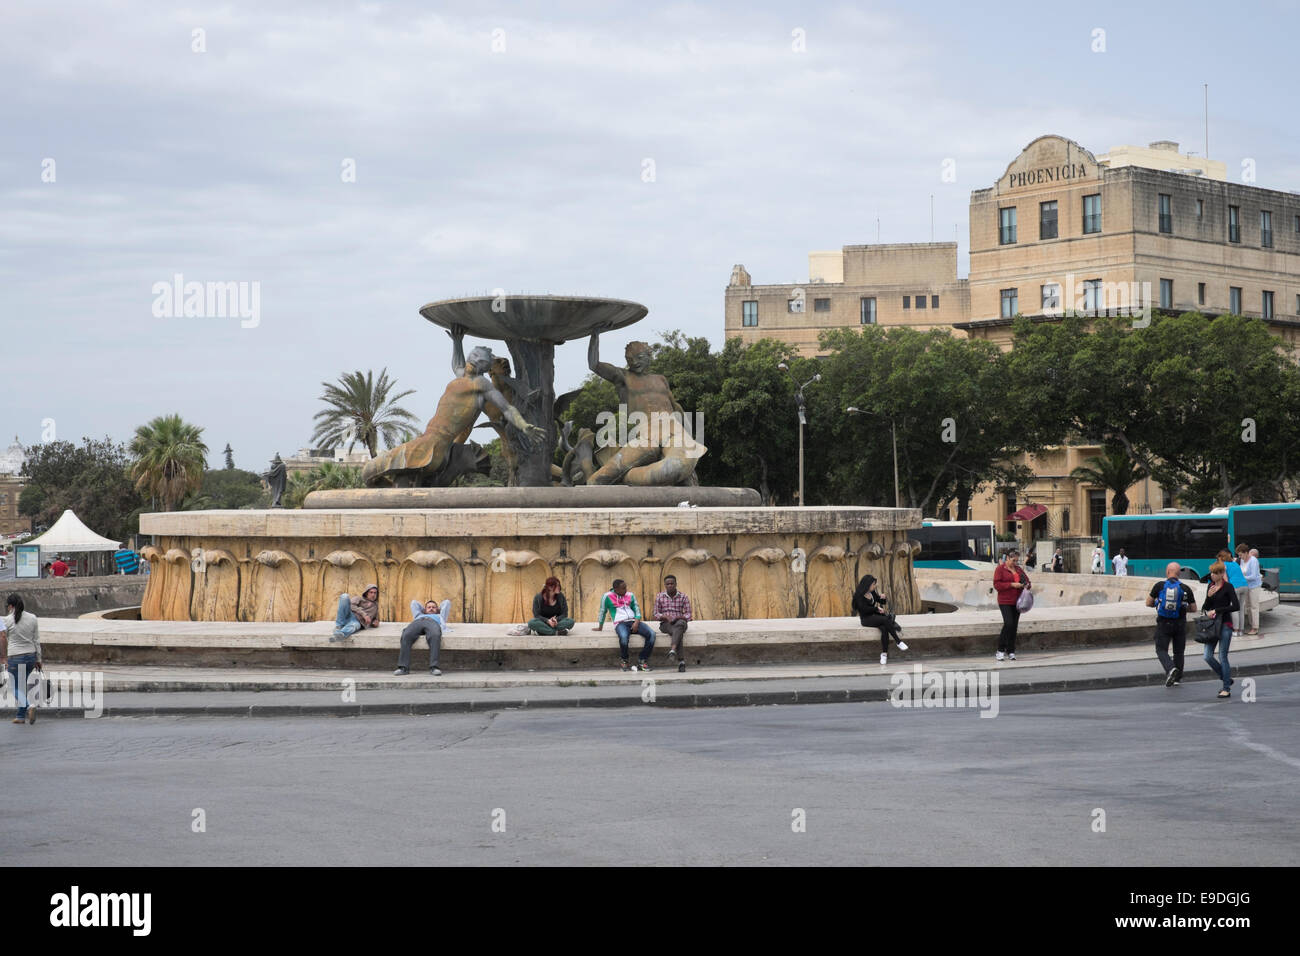 Triton Fountain at Floriana in Malta Stock Photo